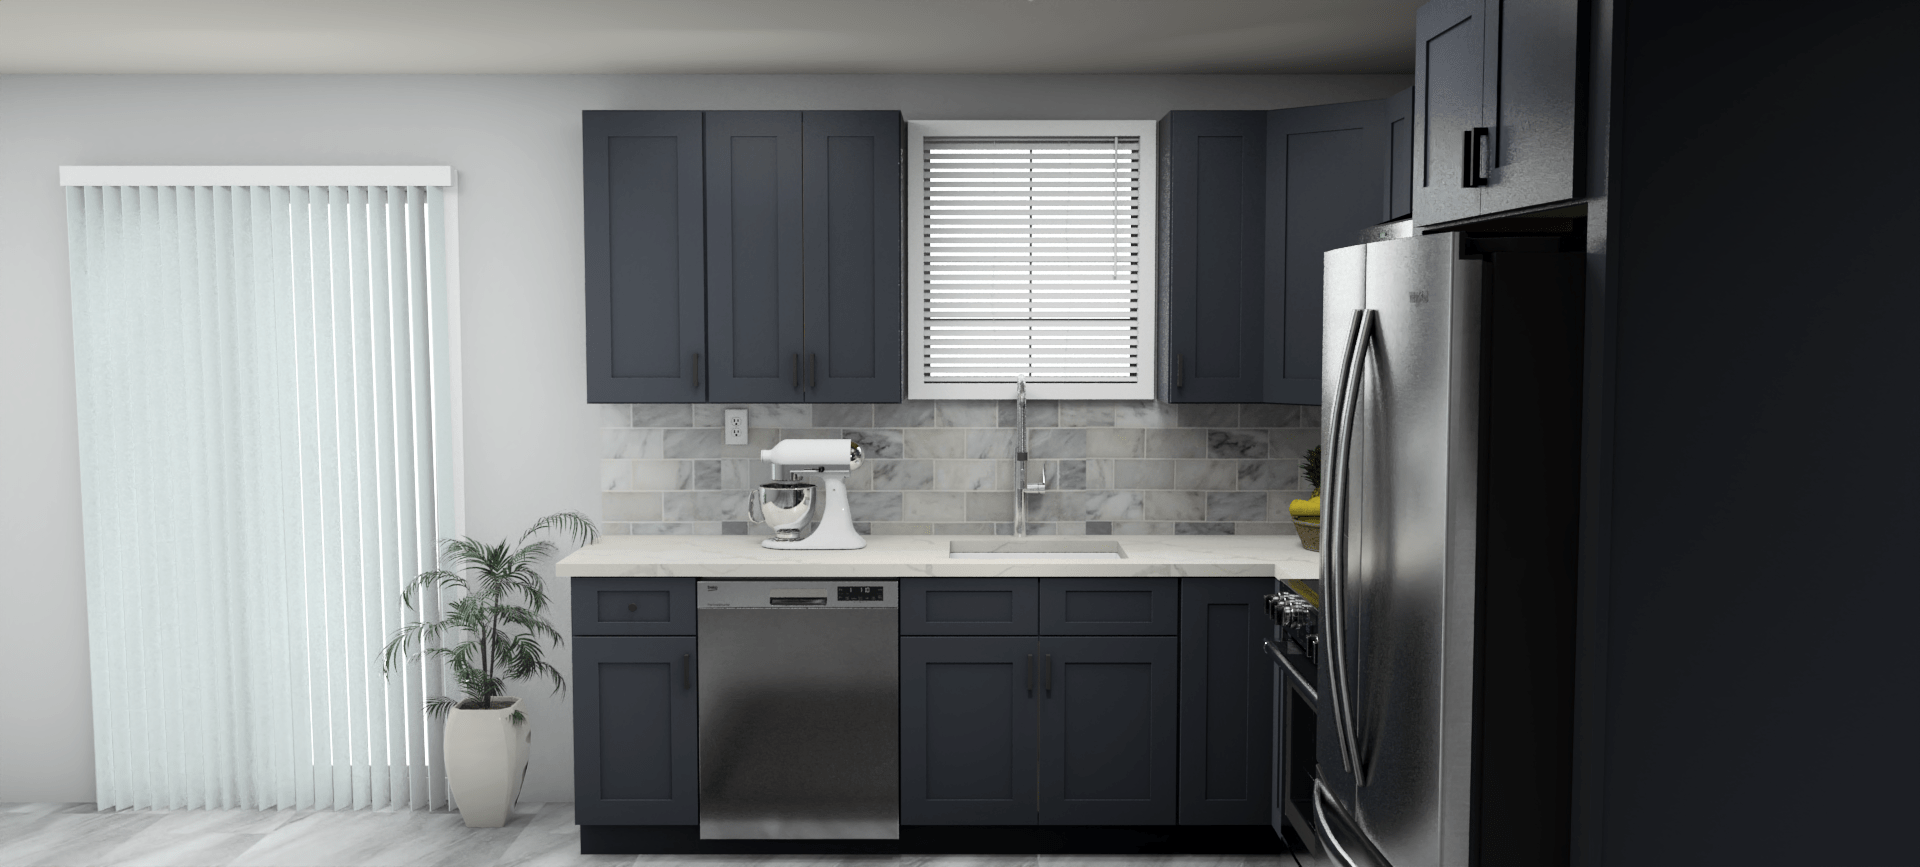 Fabuwood Allure Galaxy Indigo 9 x 10 L Shaped Kitchen Side Layout Photo